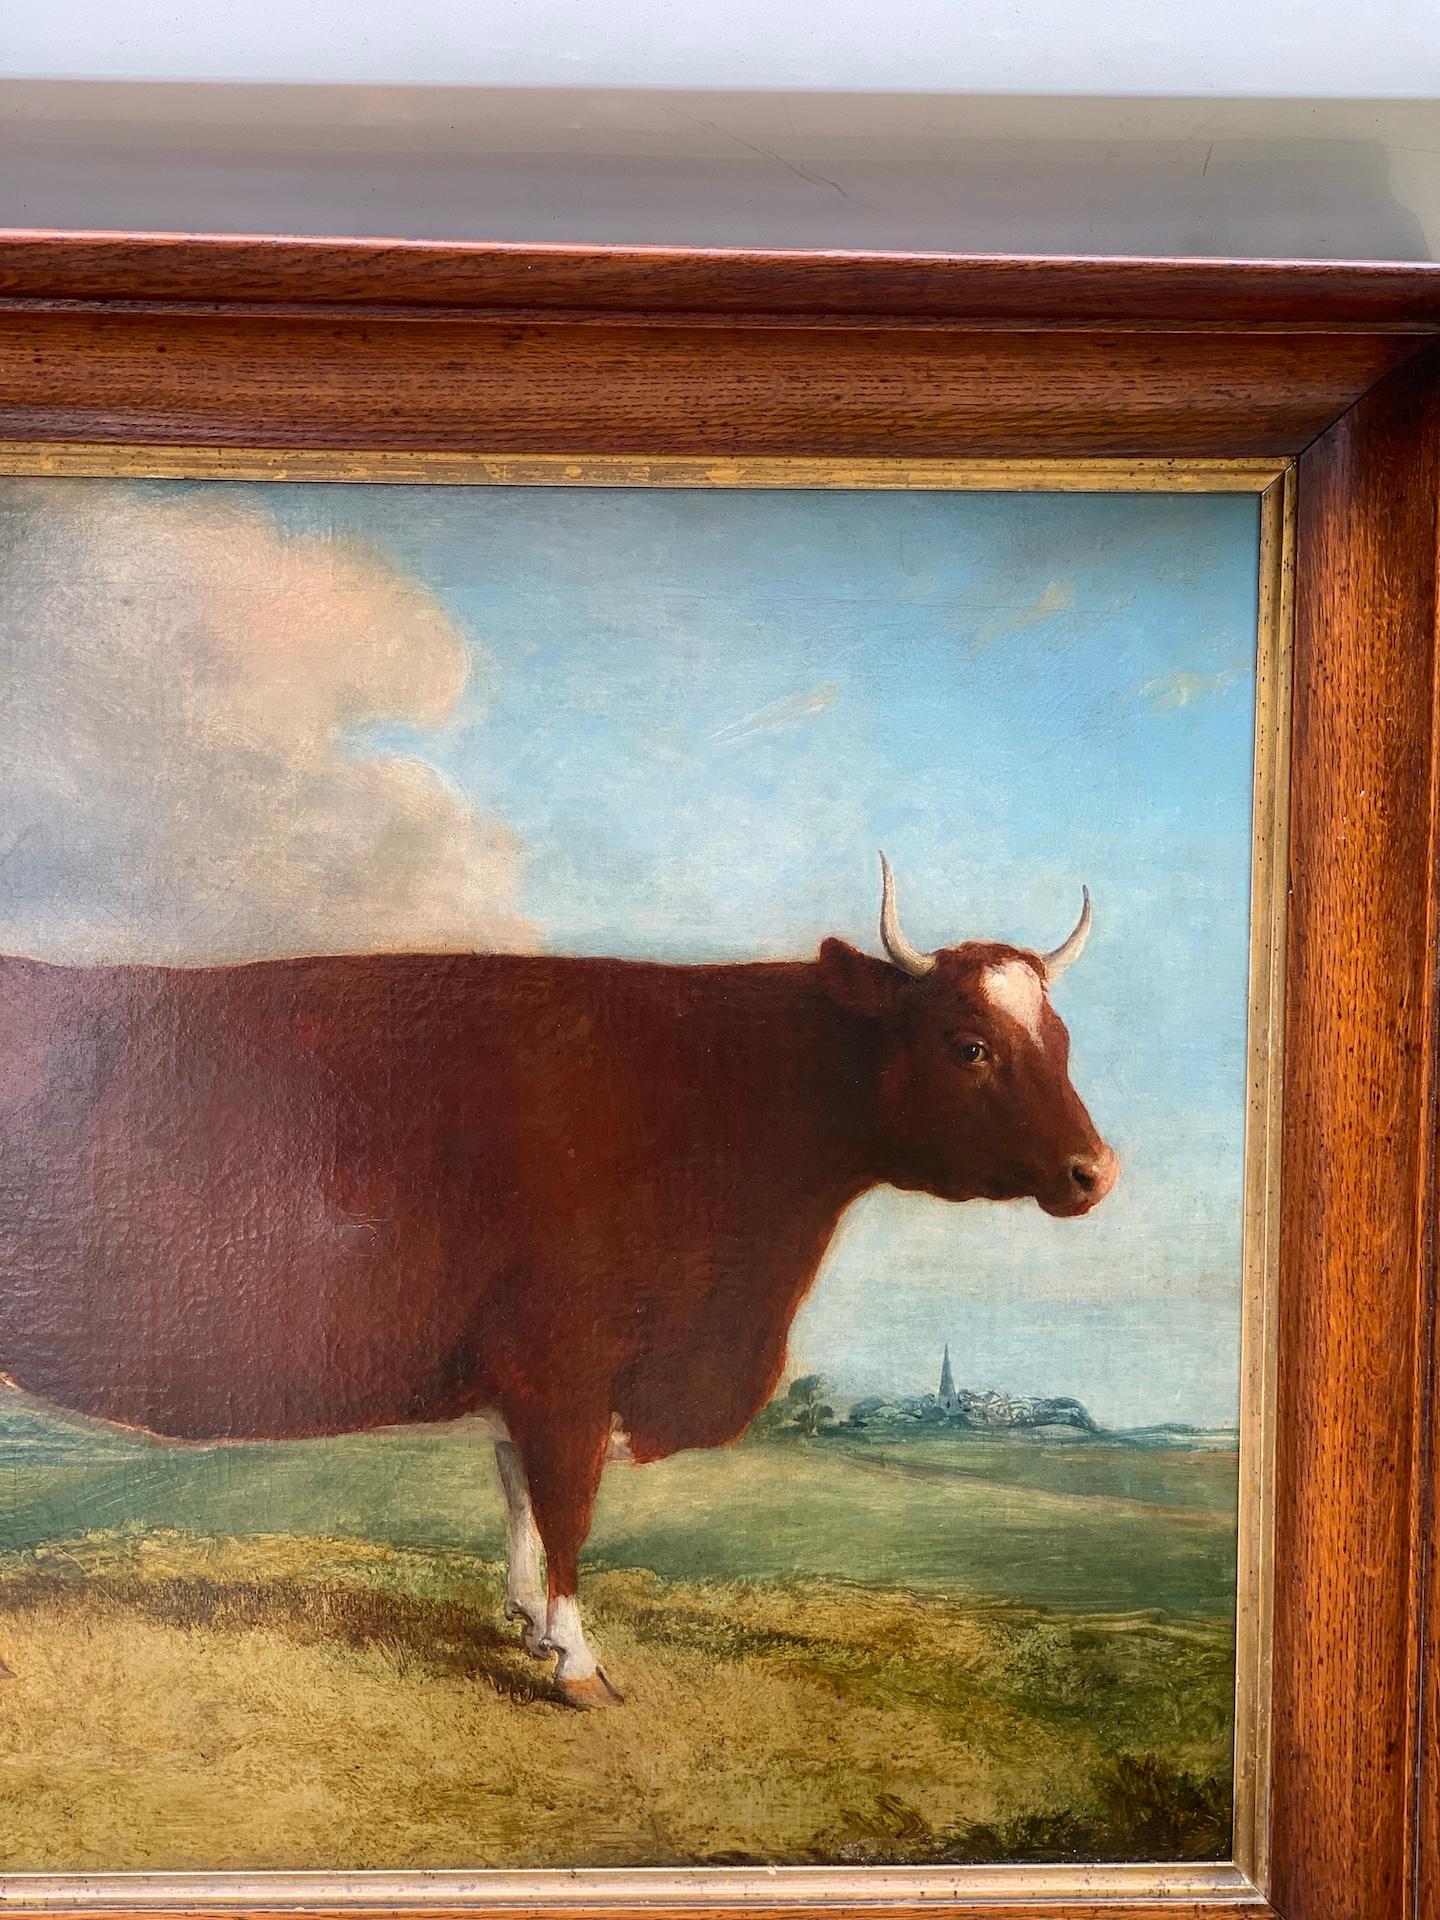 19th century livestock paintings